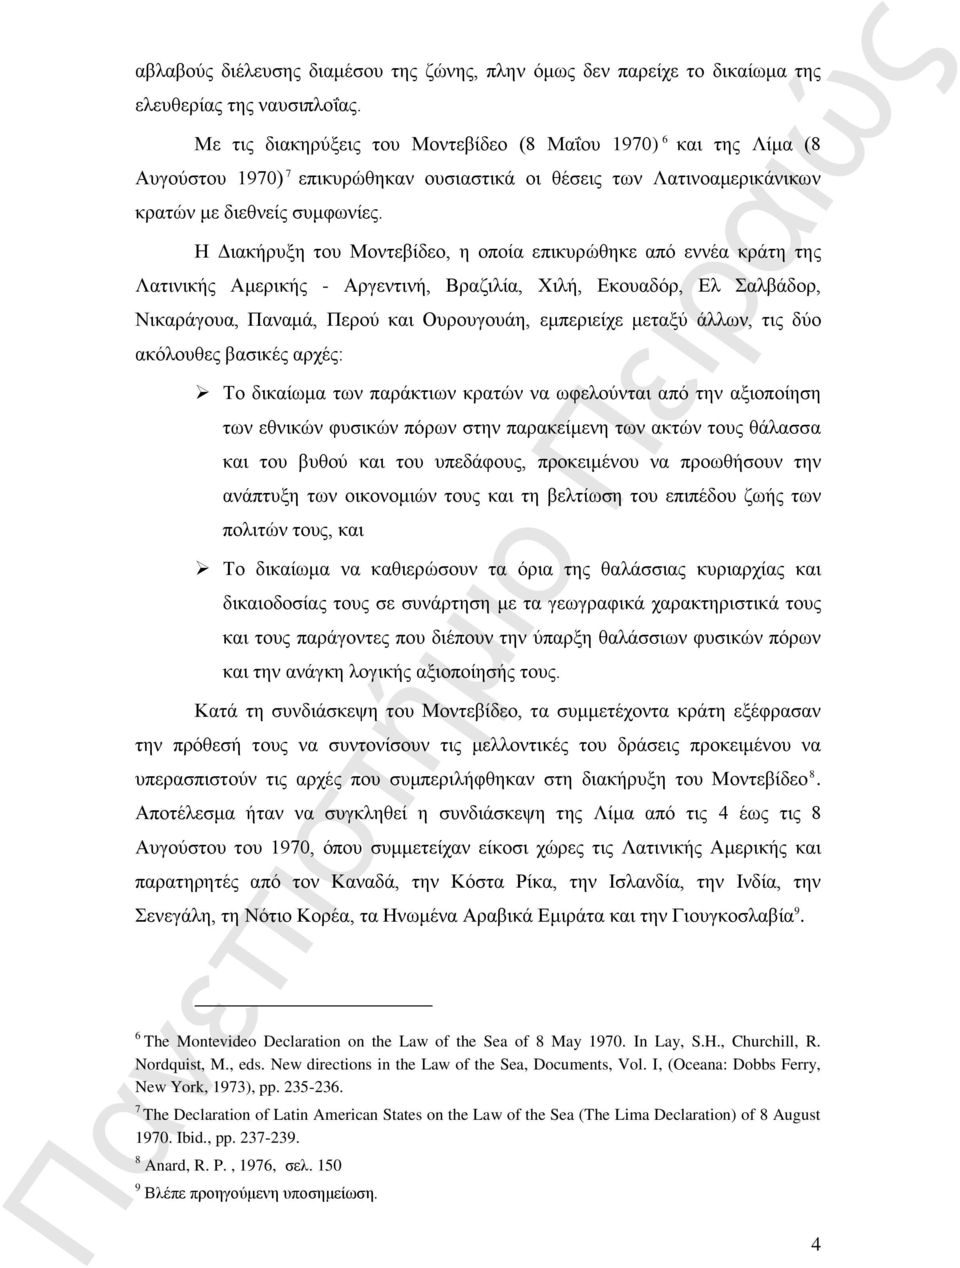 Η Διακήρυξη του Μοντεβίδεο, η οποία επικυρώθηκε από εννέα κράτη της Λατινικής Αμερικής - Αργεντινή, Βραζιλία, Χιλή, Εκουαδόρ, Ελ Σαλβάδορ, Νικαράγουα, Παναμά, Περού και Ουρουγουάη, εμπεριείχε μεταξύ